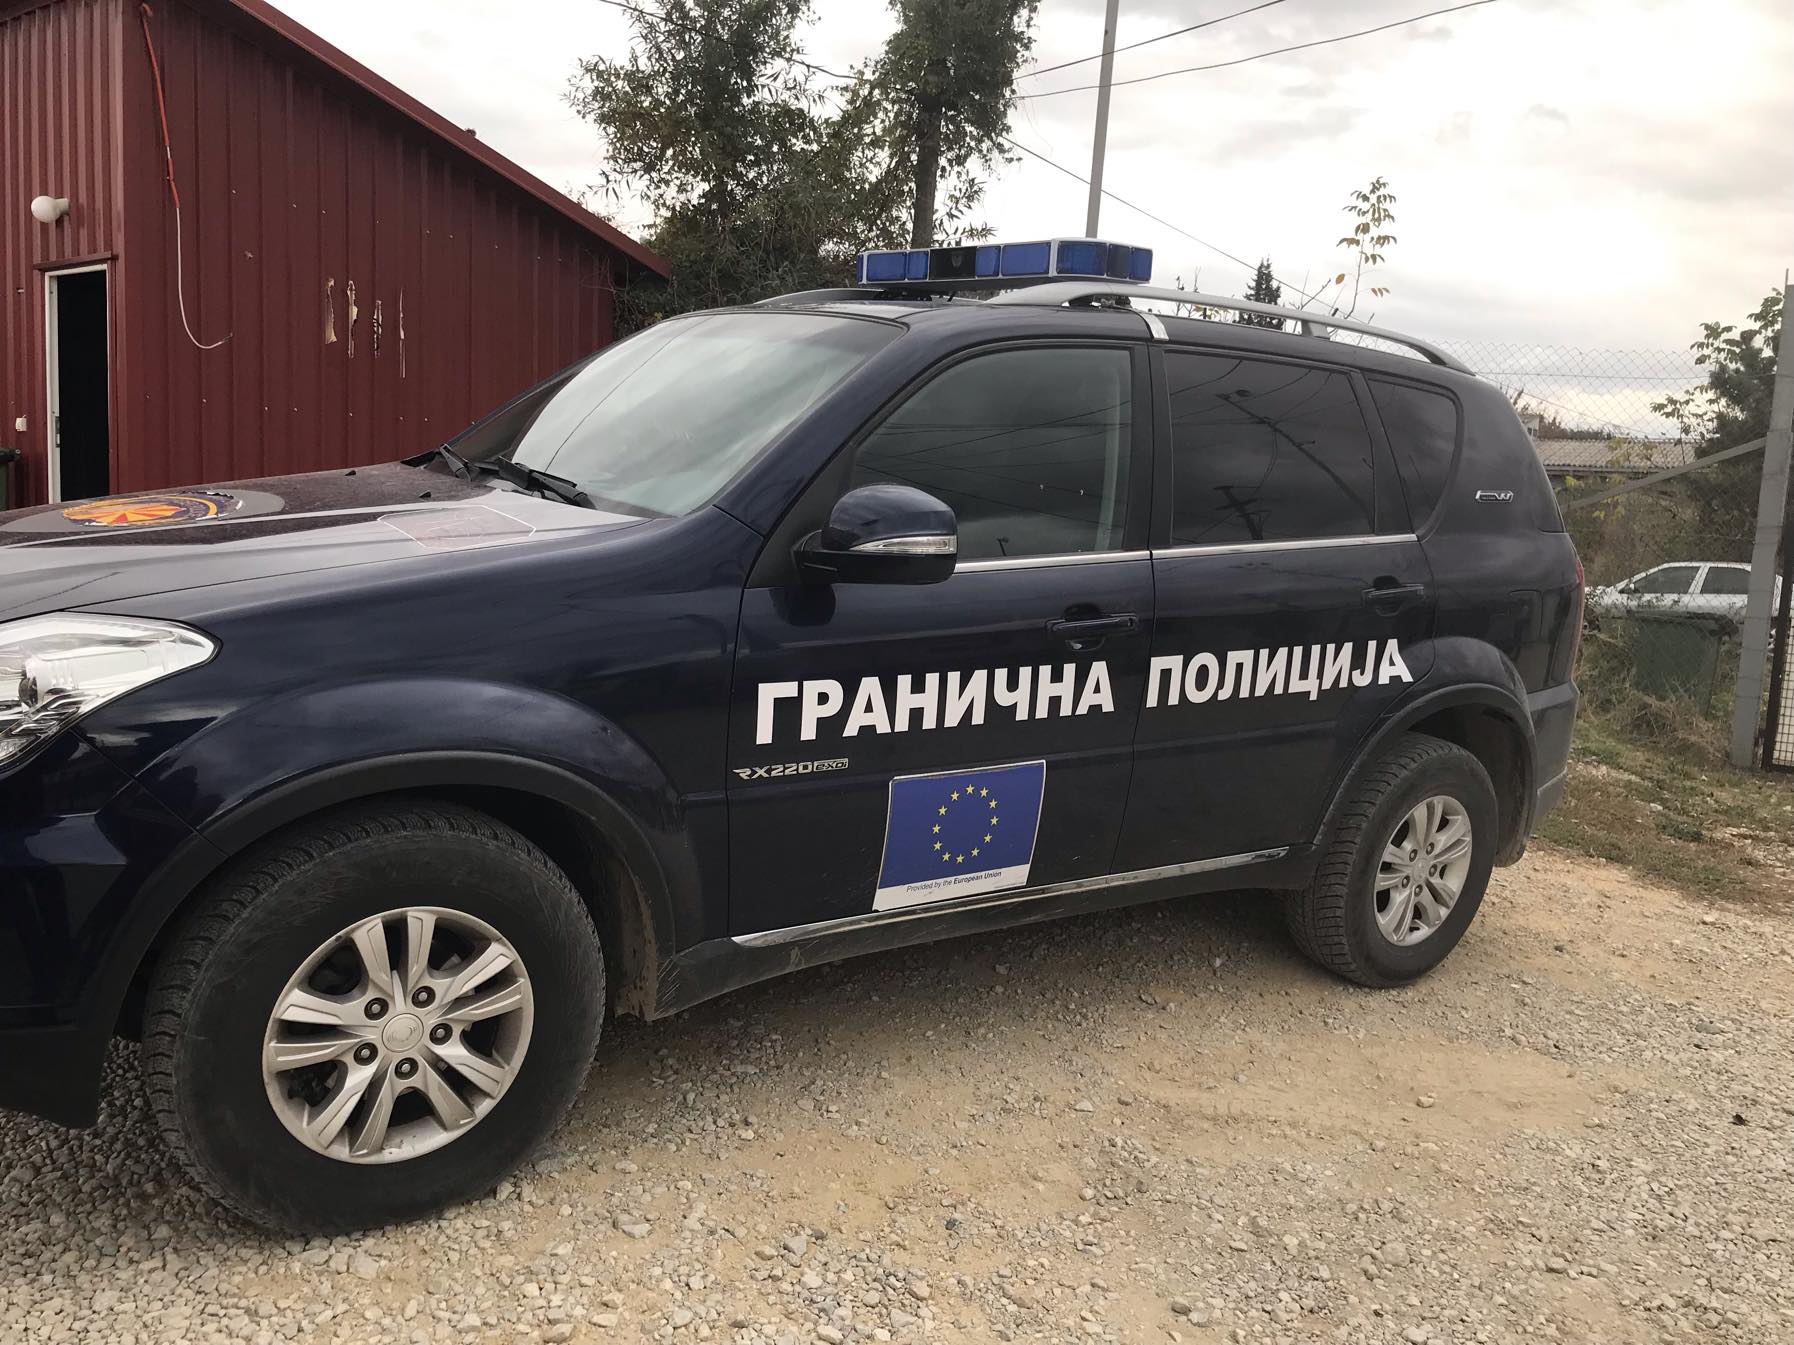 Carinici S. Makedonije sprečili šverc pet kilograma zlata u vozilu sa srpskim tablicama 1